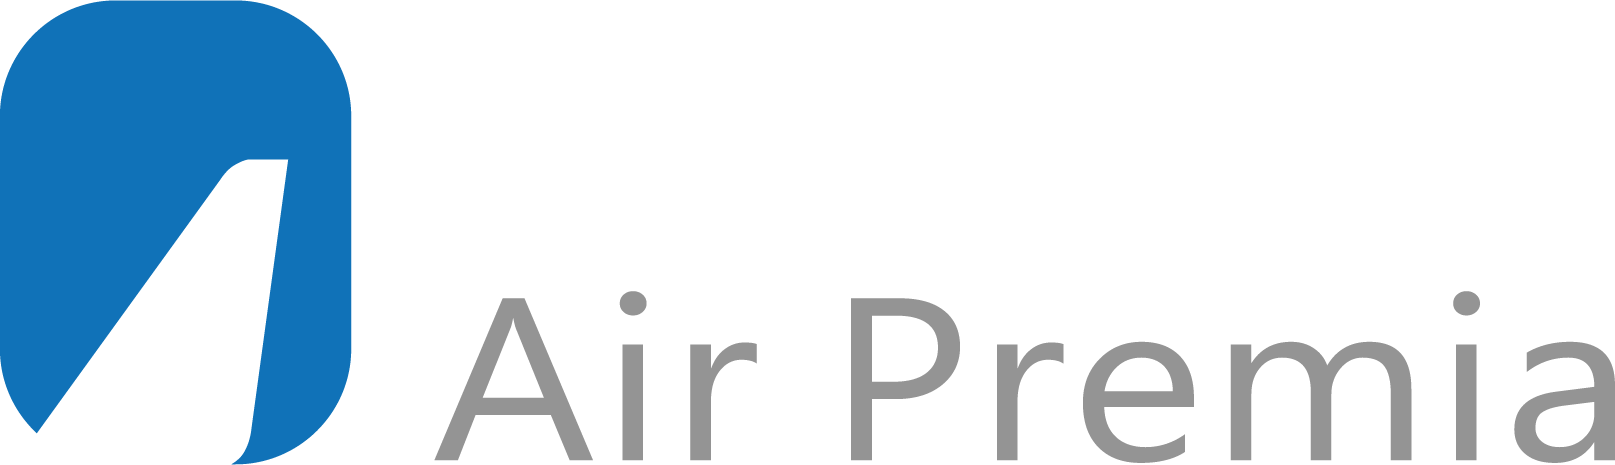 Air Premia